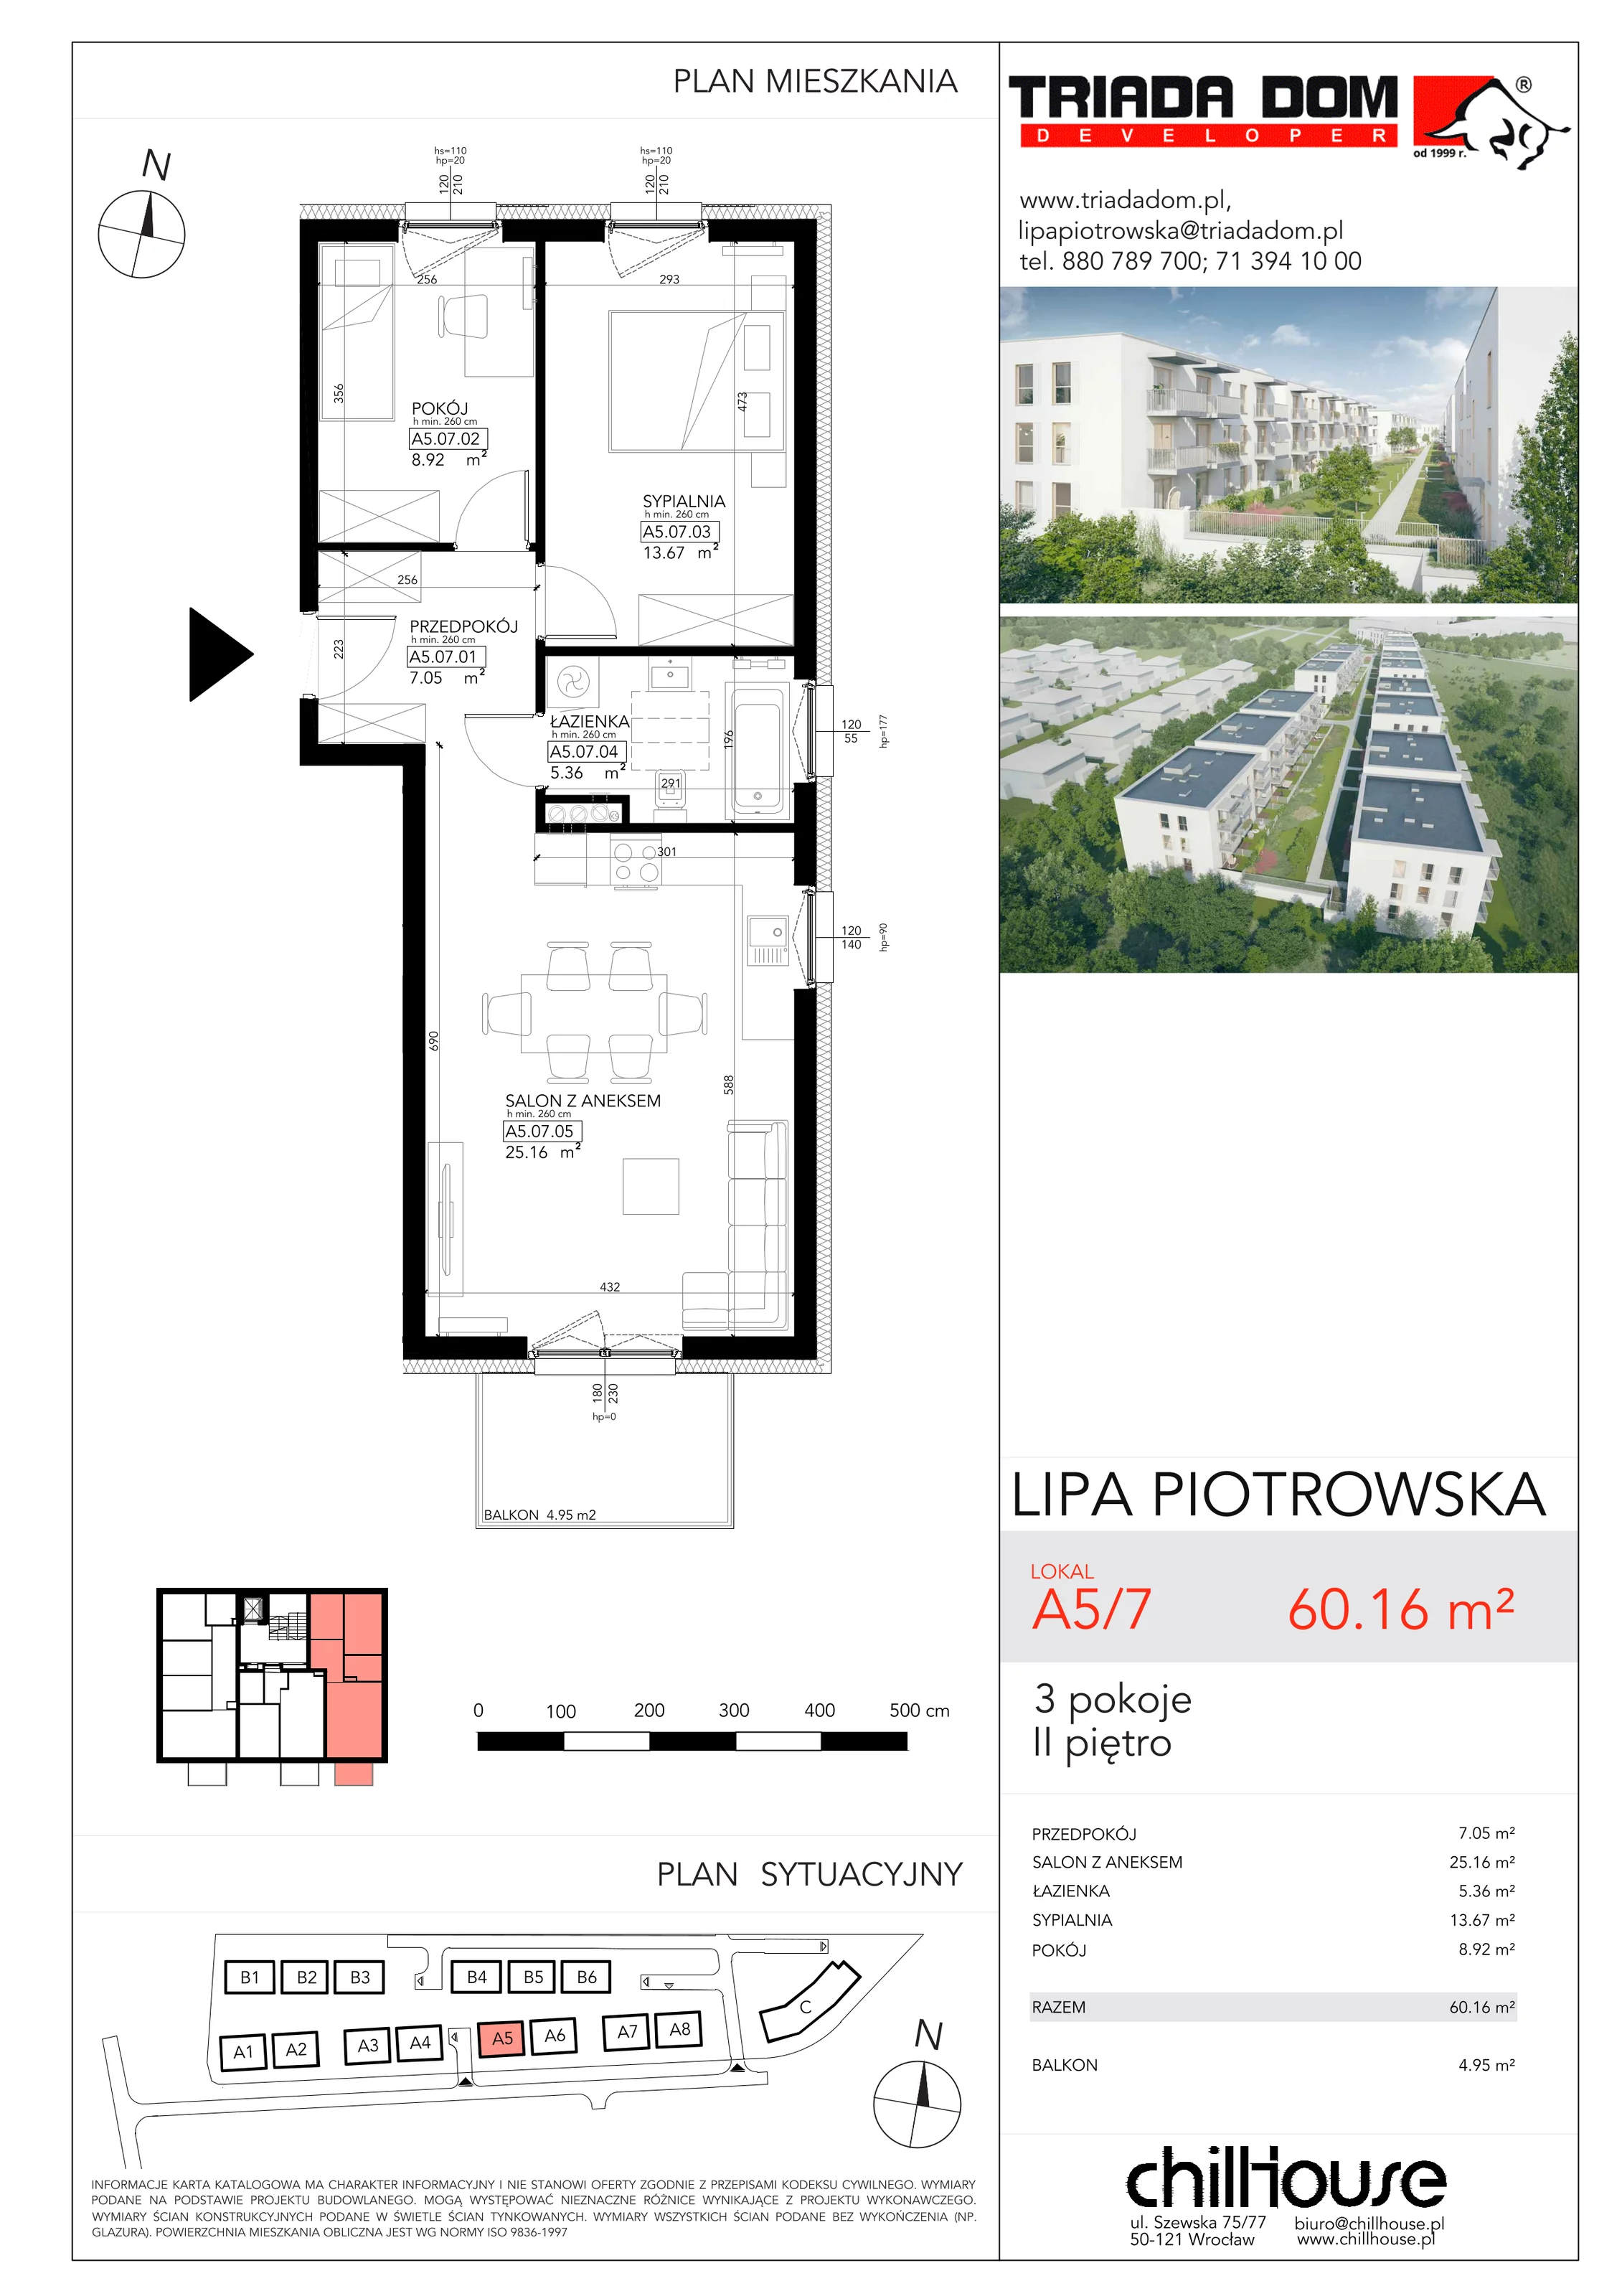 Mieszkanie 60,16 m², piętro 2, oferta nr A57, Lipa Piotrowska, Wrocław, Lipa Piotrowska, ul. Lawendowa / Melisowa